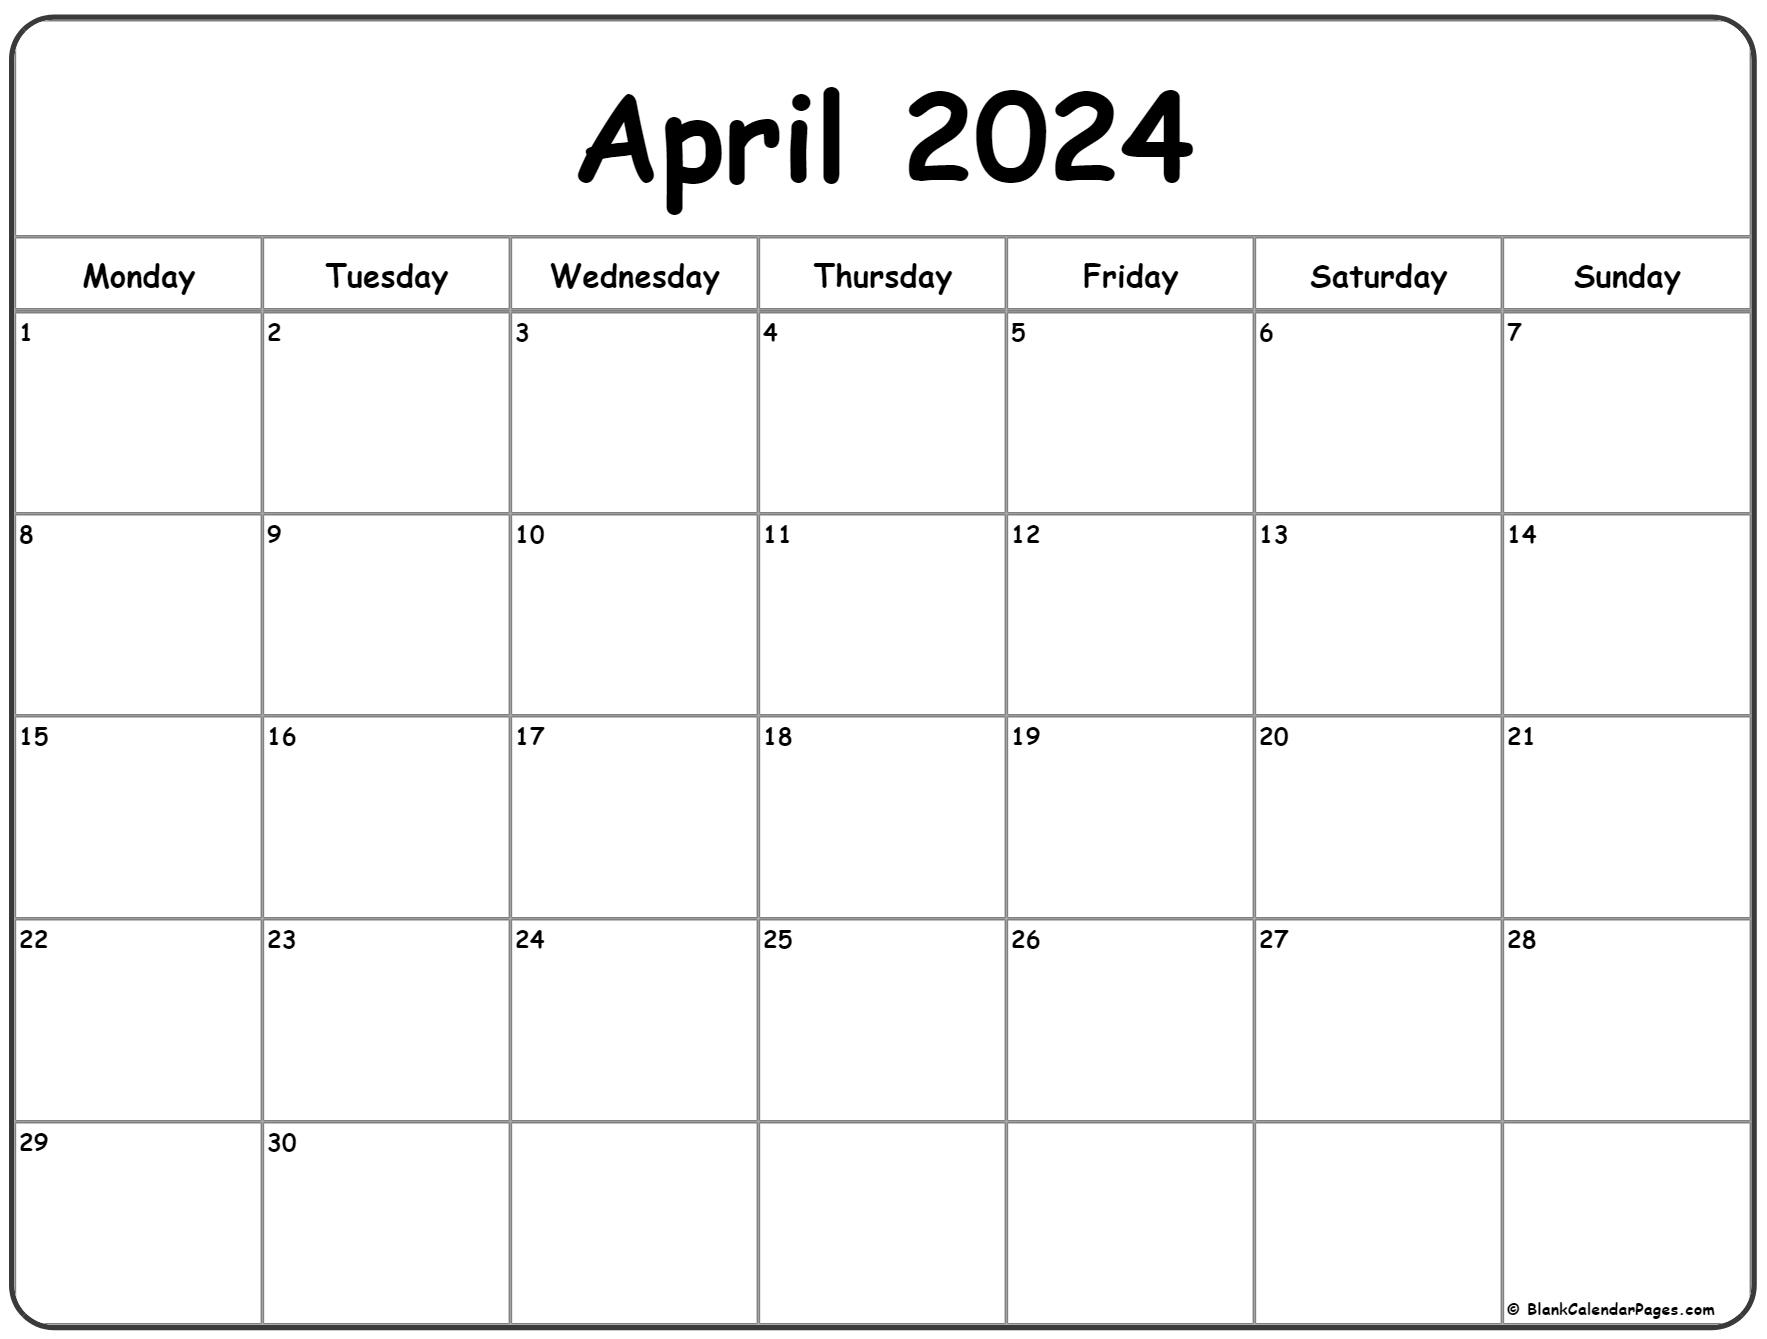 April 2024 Monday Calendar | Monday To Sunday for Printable Calendar Of April 2024